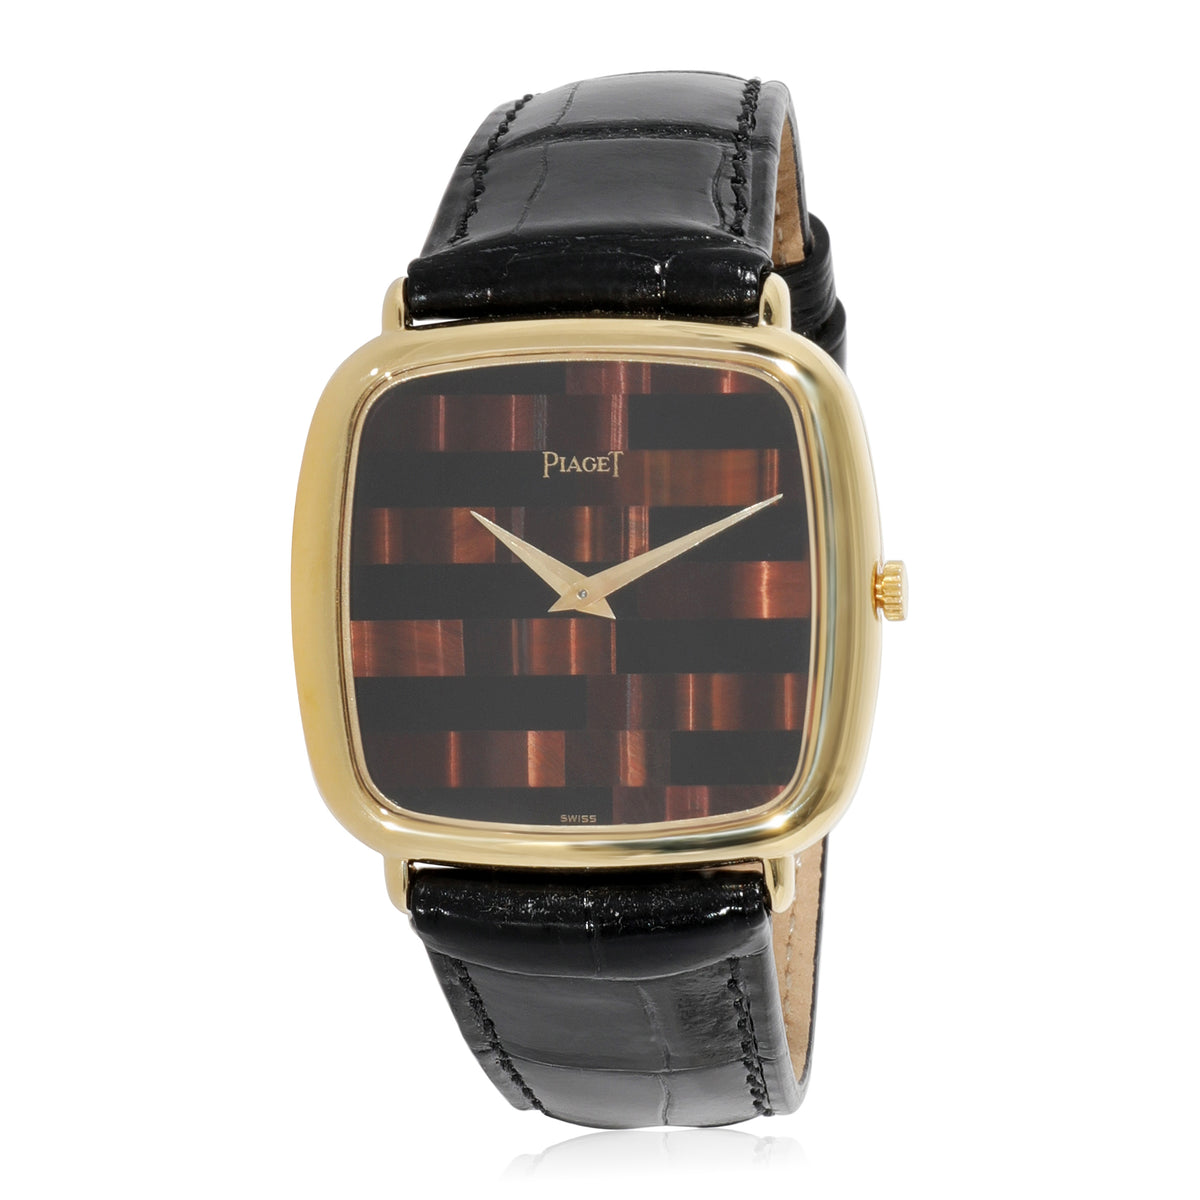 Piaget Classique 97722 Men's Watch in 18kt Yellow Gold